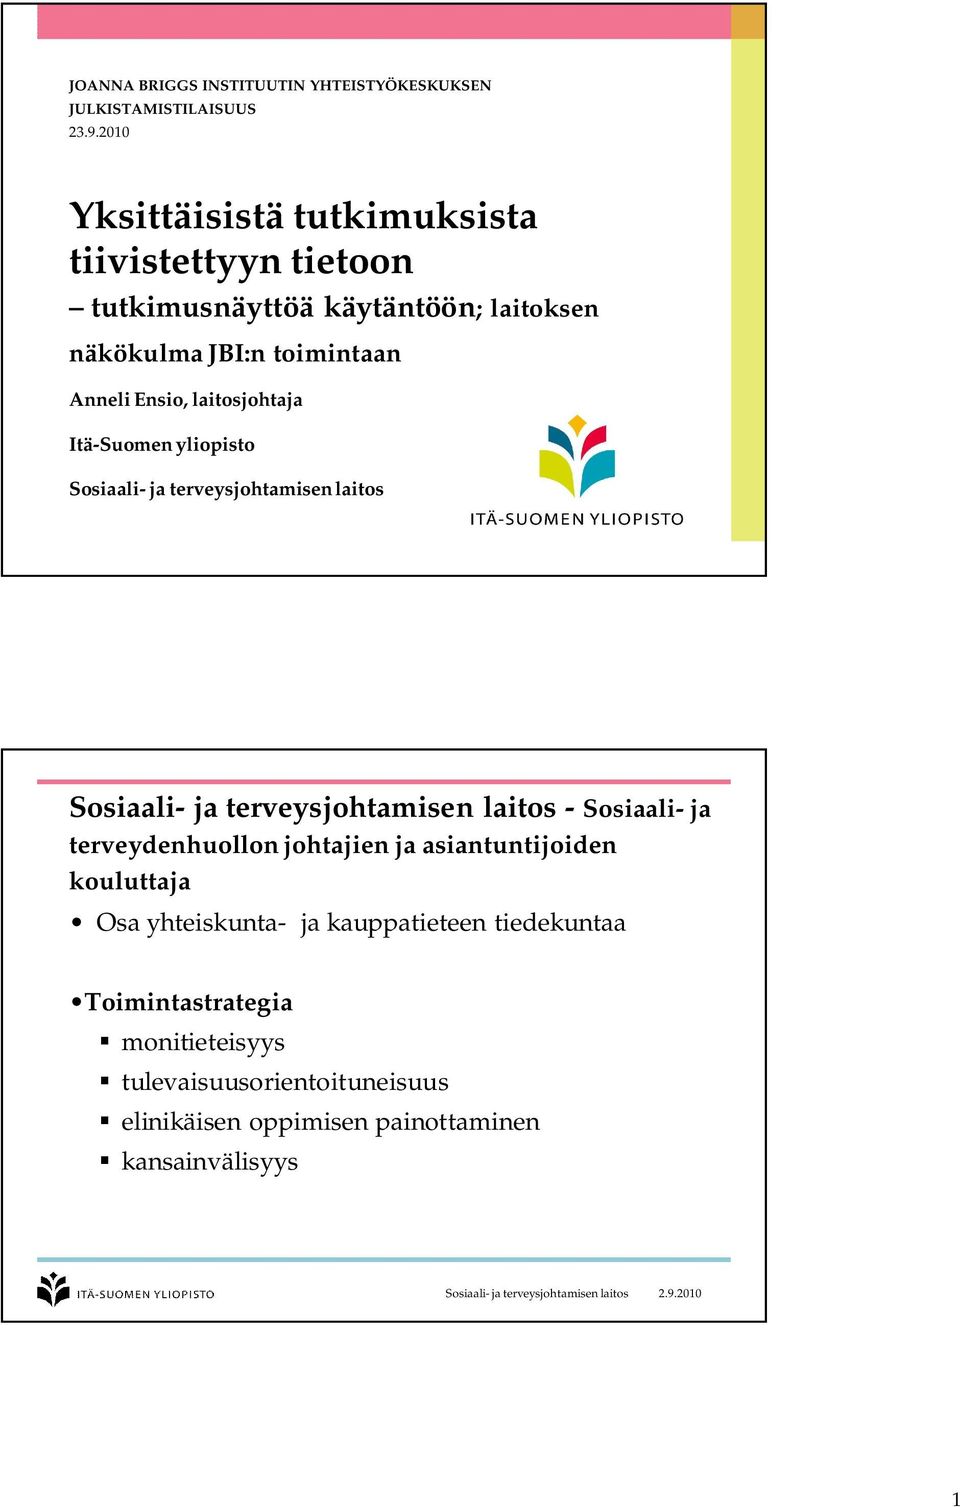 Itä-Suomen yliopisto Sosiaali- ja terveysjohtamisenlaitos Sosiaali- ja terveysjohtamisen laitos - Sosiaali- ja terveydenhuollon johtajien ja